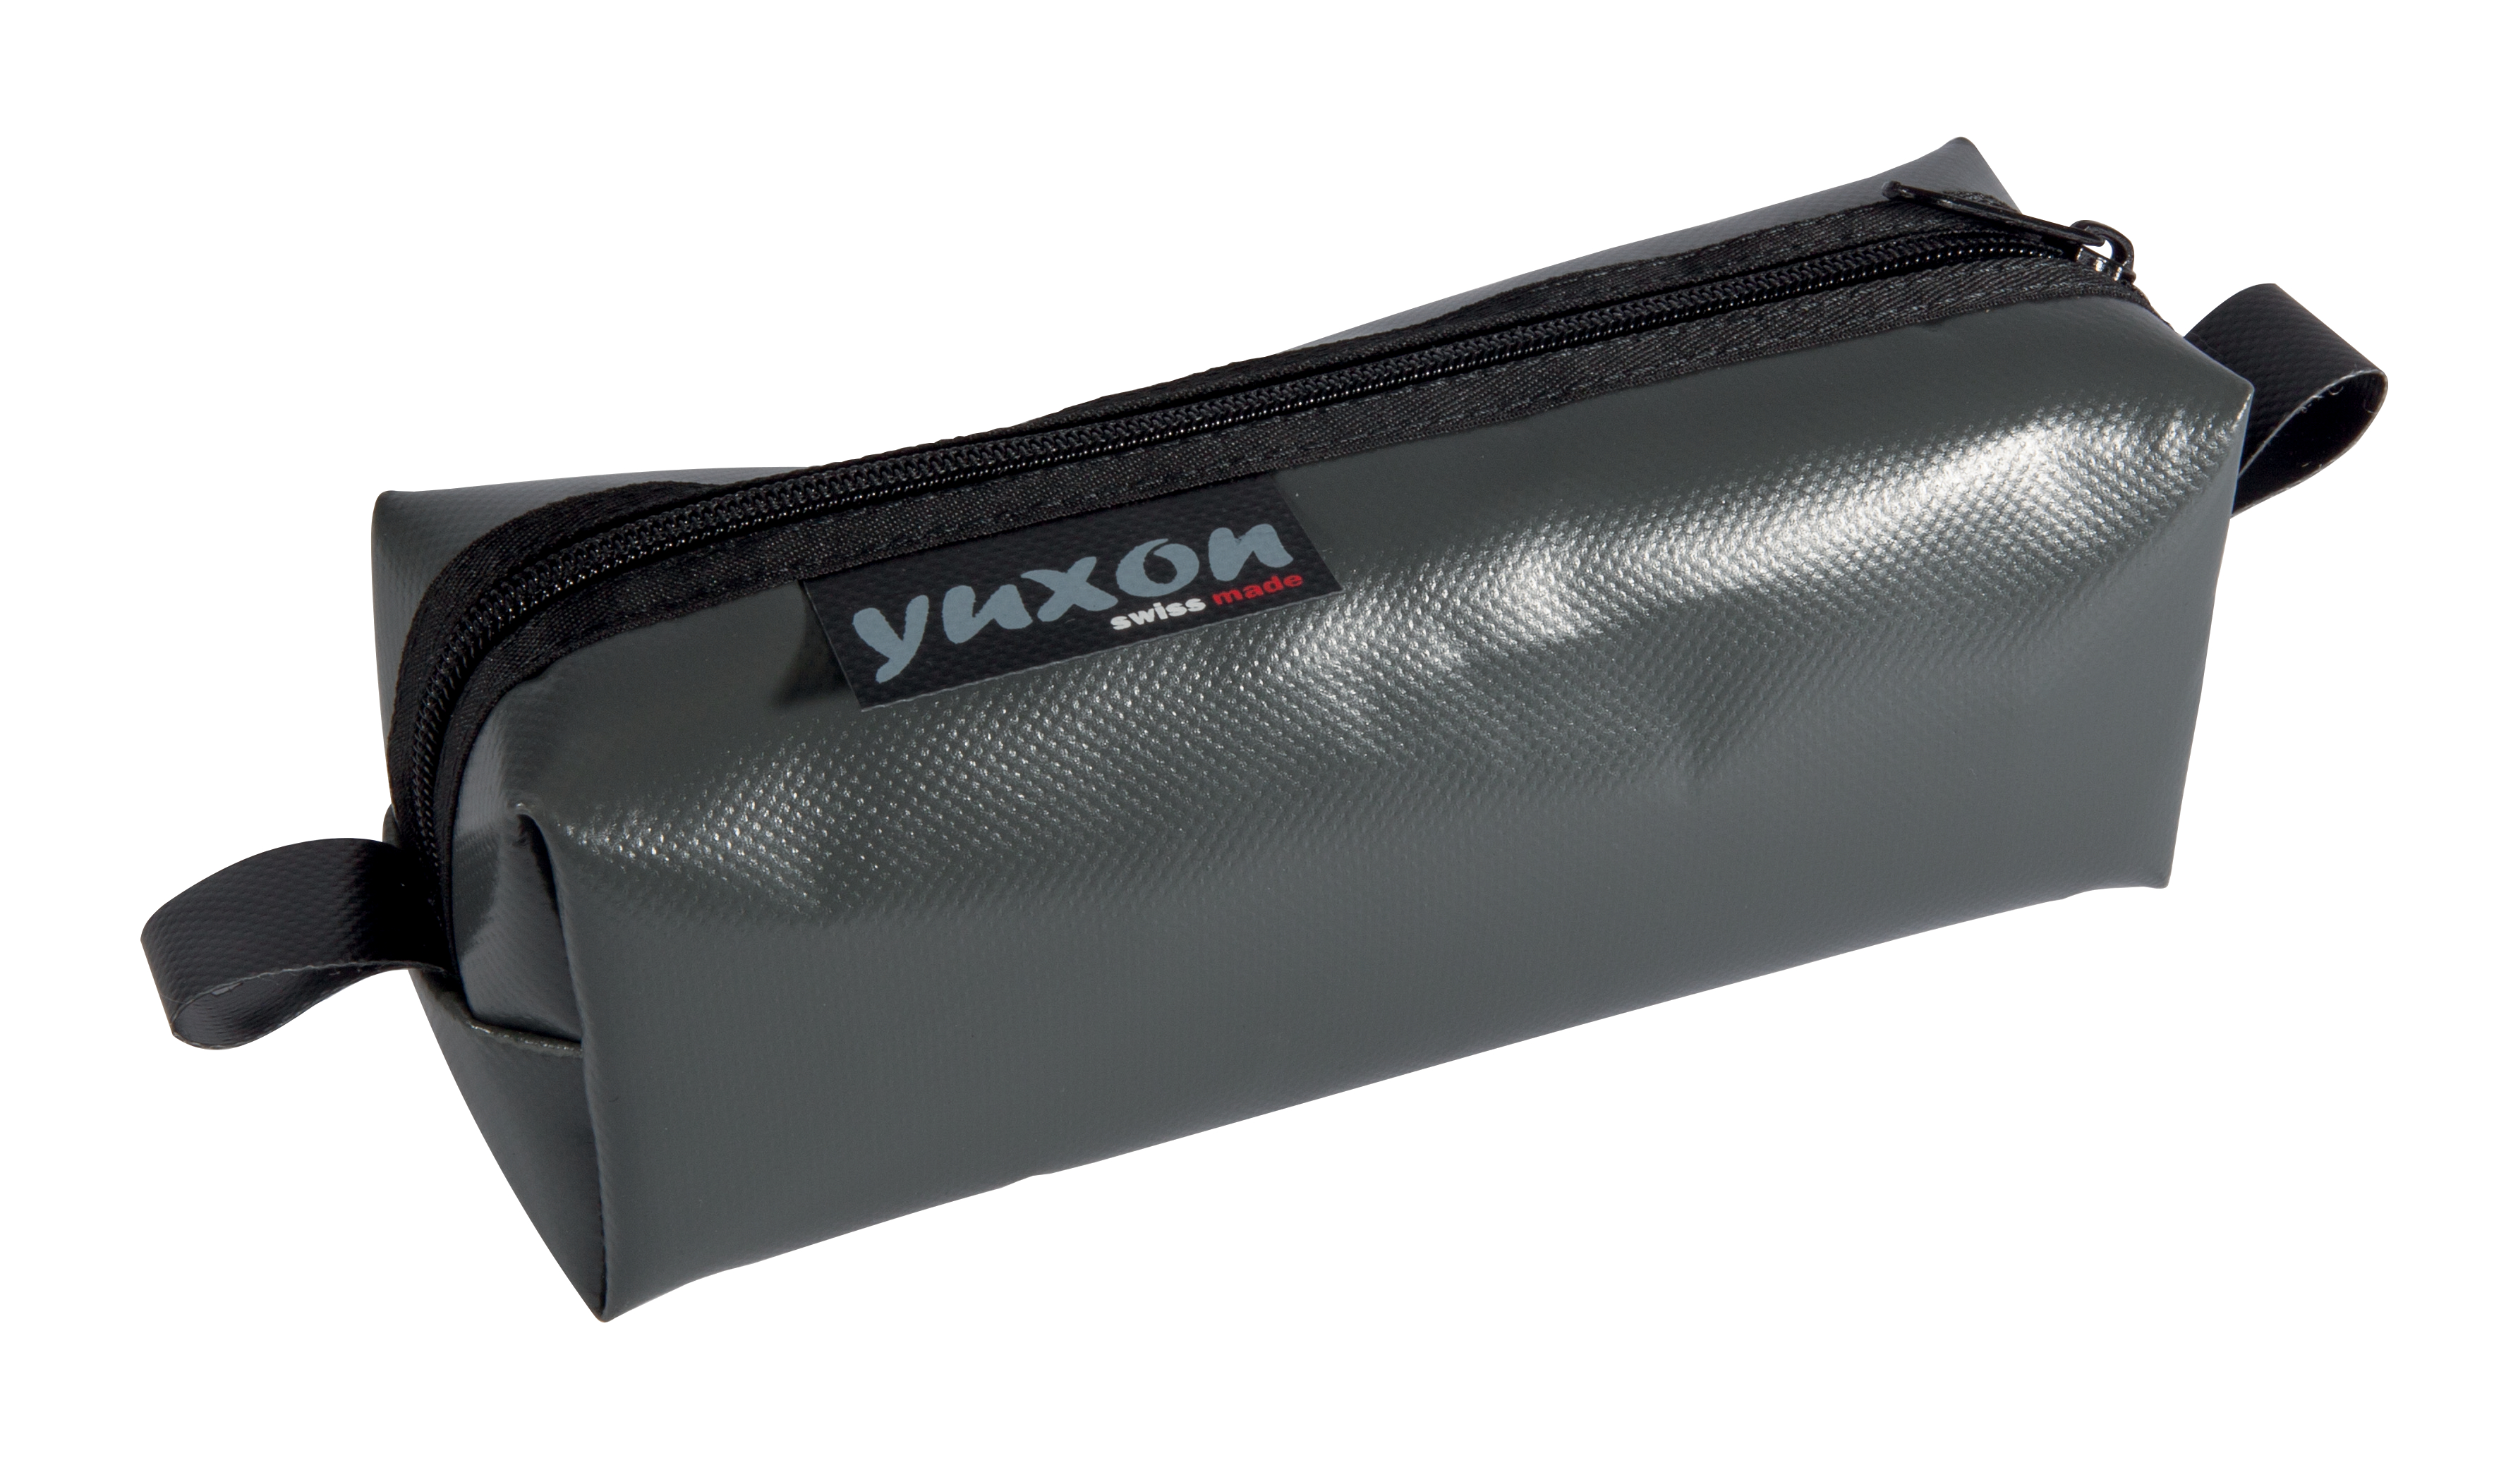 YUXON Trousse Maxi 8900.17 gris foncé gris foncé